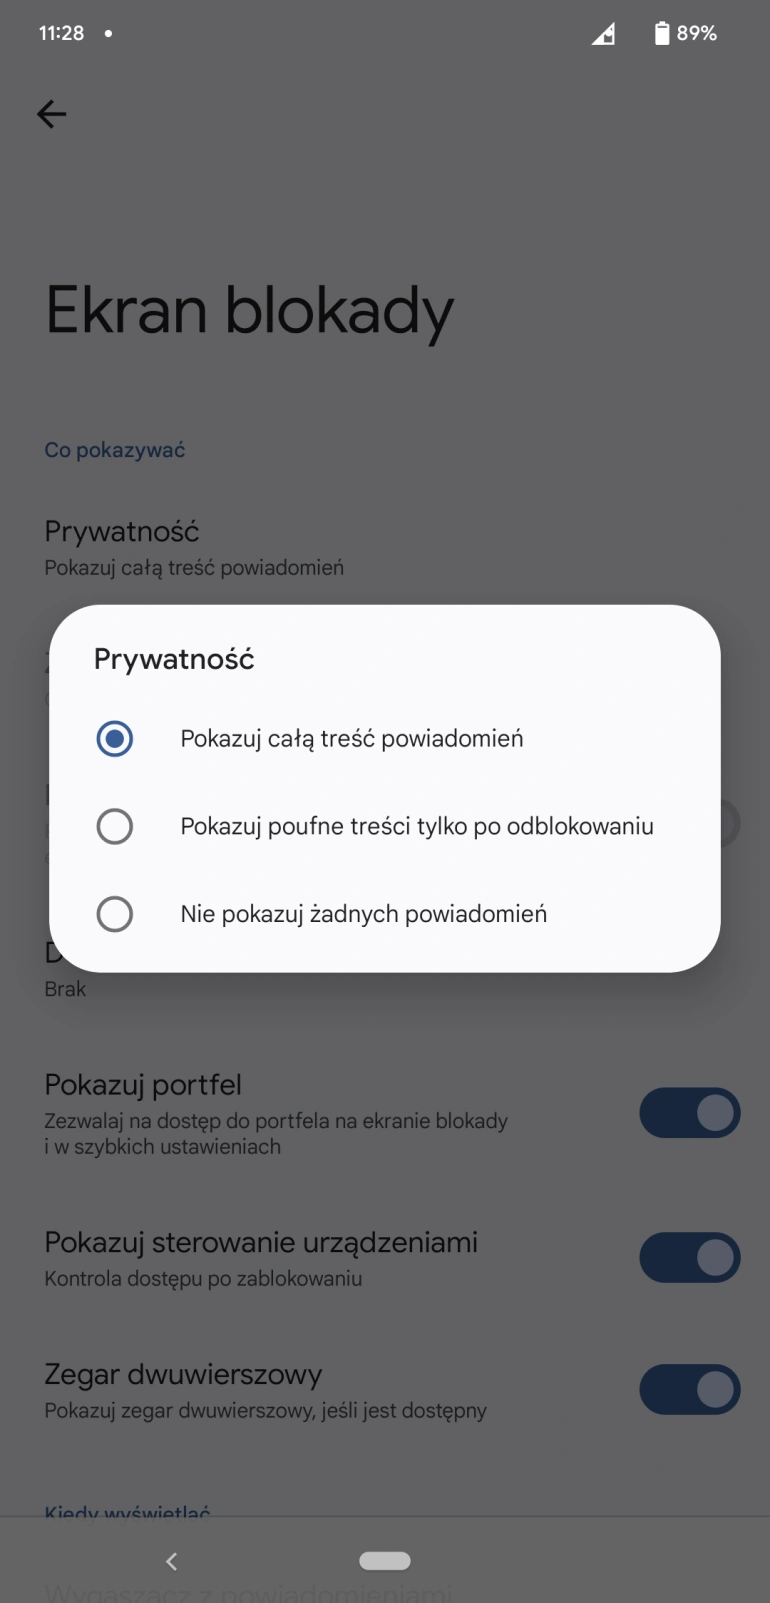 <p>Ograniczenie dostępu do powiadomień na ekranie blokady</p>

<p>fot. Daniel Olszewski / Computerworld.pl</p>